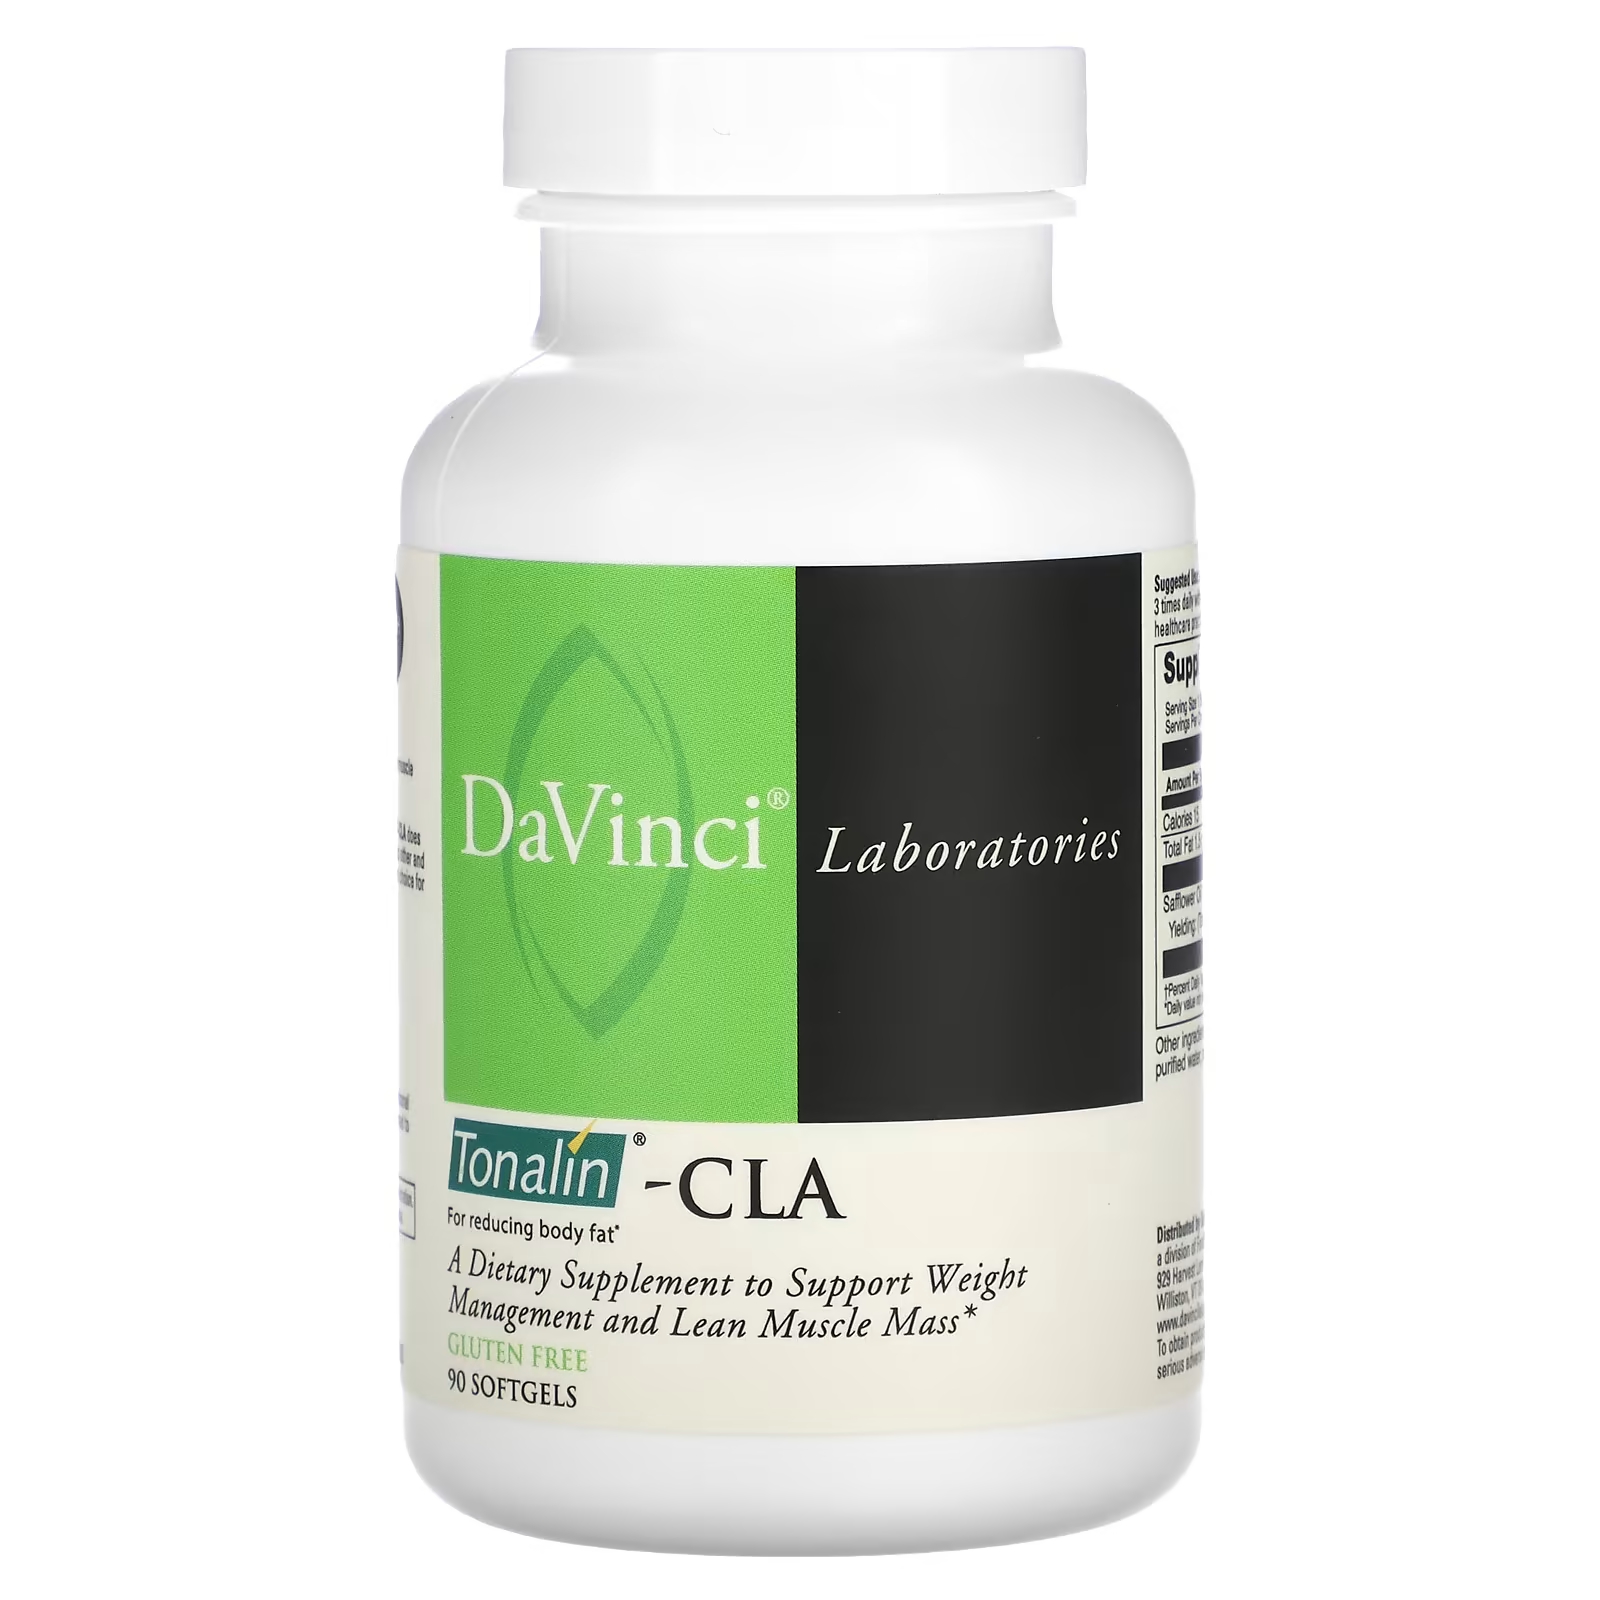 Тоналин DaVinci Laboratories of Vermont - CLA, 90 мягких таблеток добавка для наращивания мышечной массы muscletech 30 капсул